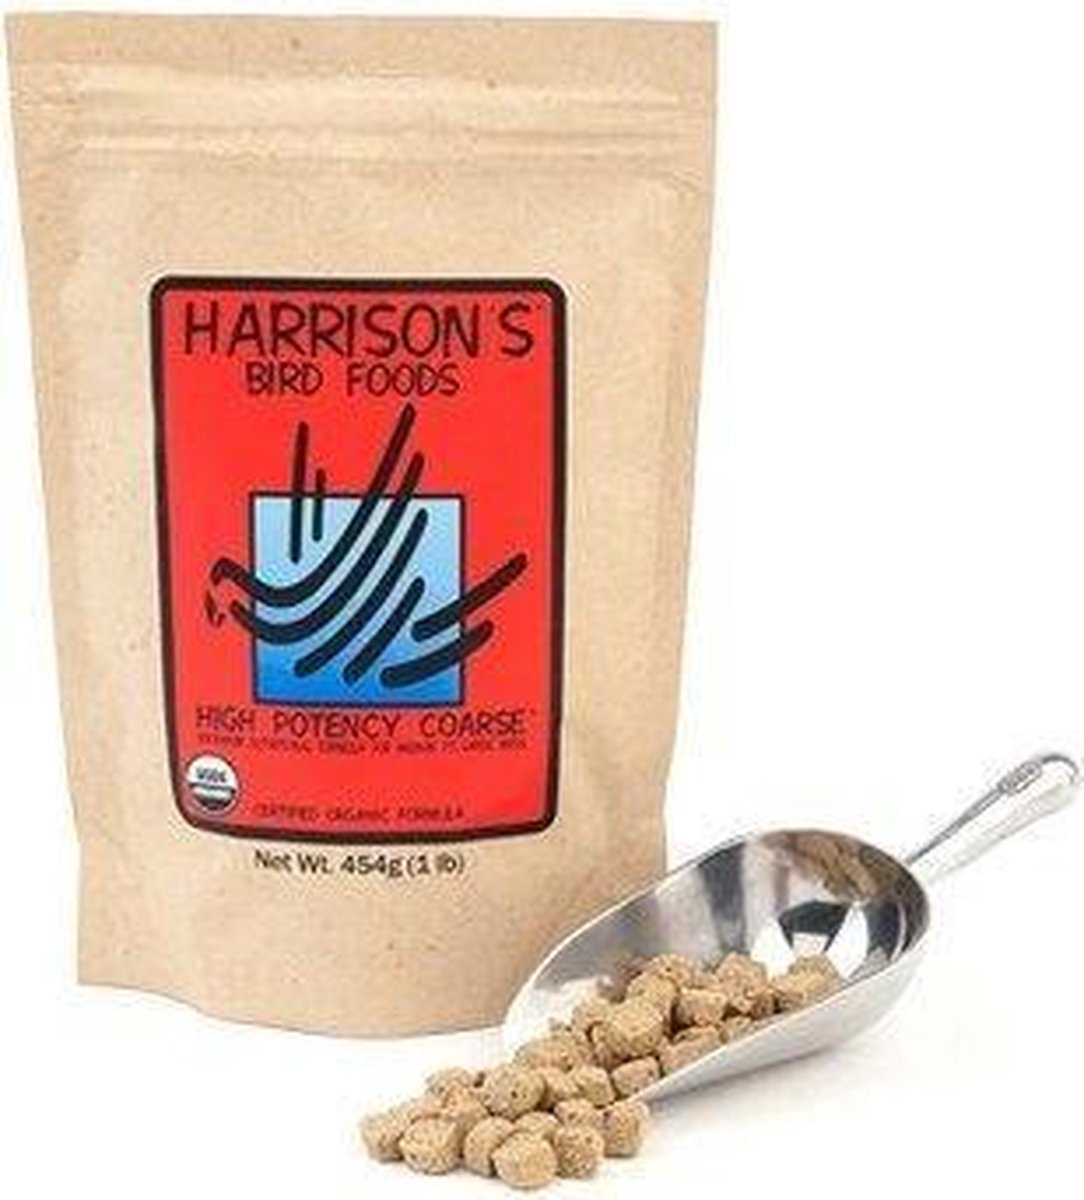 Harrison's High Potency Coarse - Binnenvogelvoer - 2.27 kg - Harrison's Bird Foods